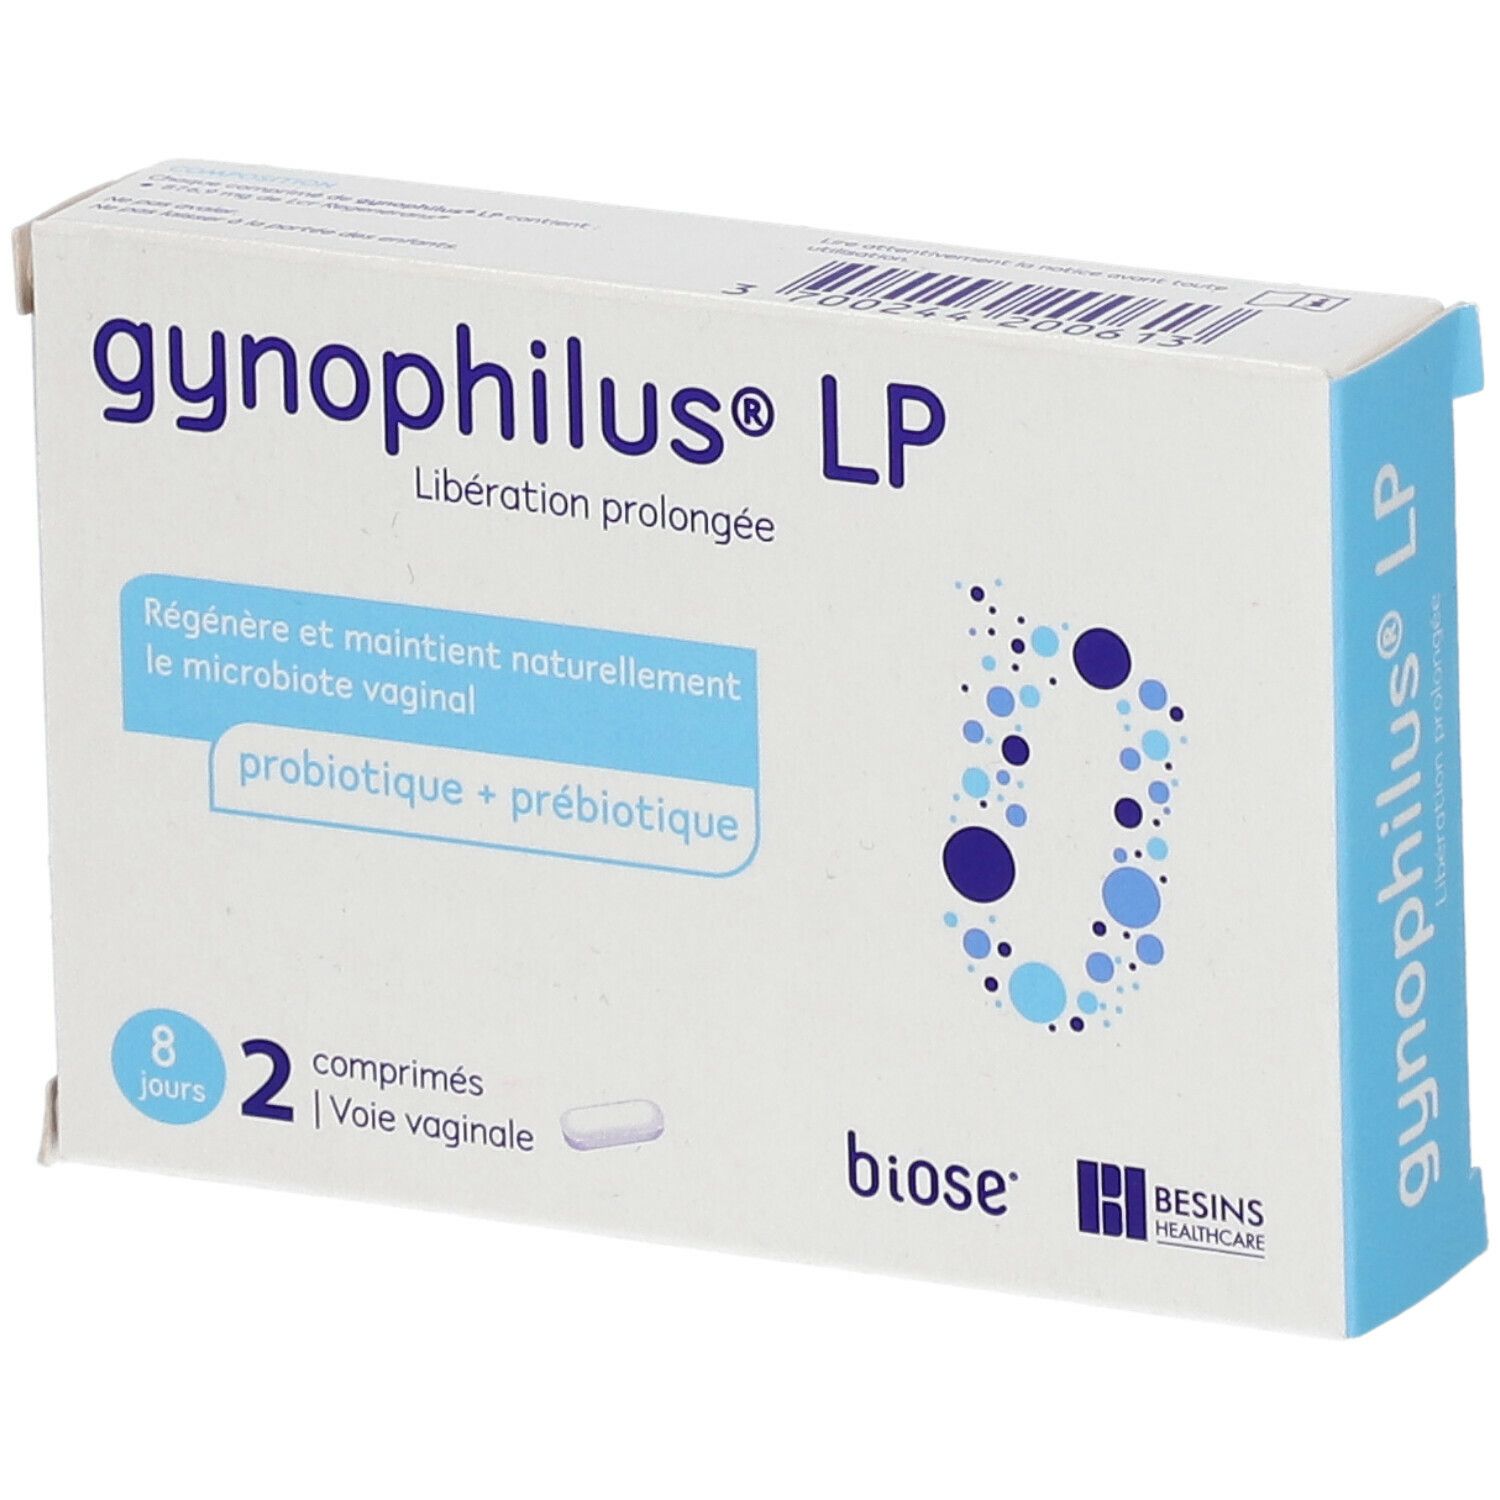 GynOphilus LP comprimés vaginaux